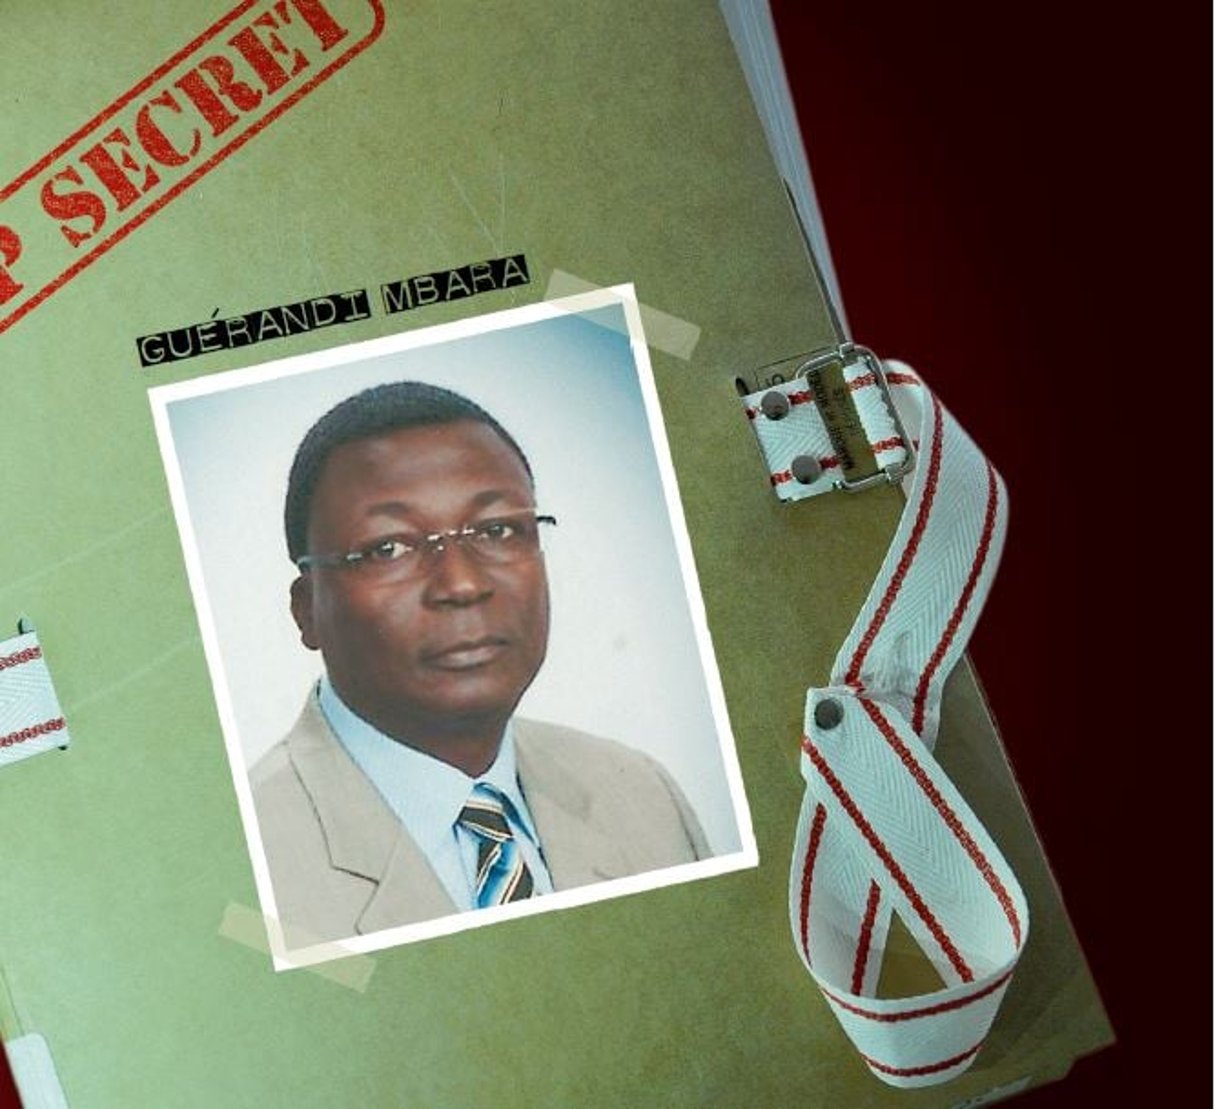 En 1984, Guérandi Mbara a 30 ans. C’est un jeune capitaine formé à l’Emia deYaoundé. C’est là qu’il rencontre Blaise Compaoré. © JA